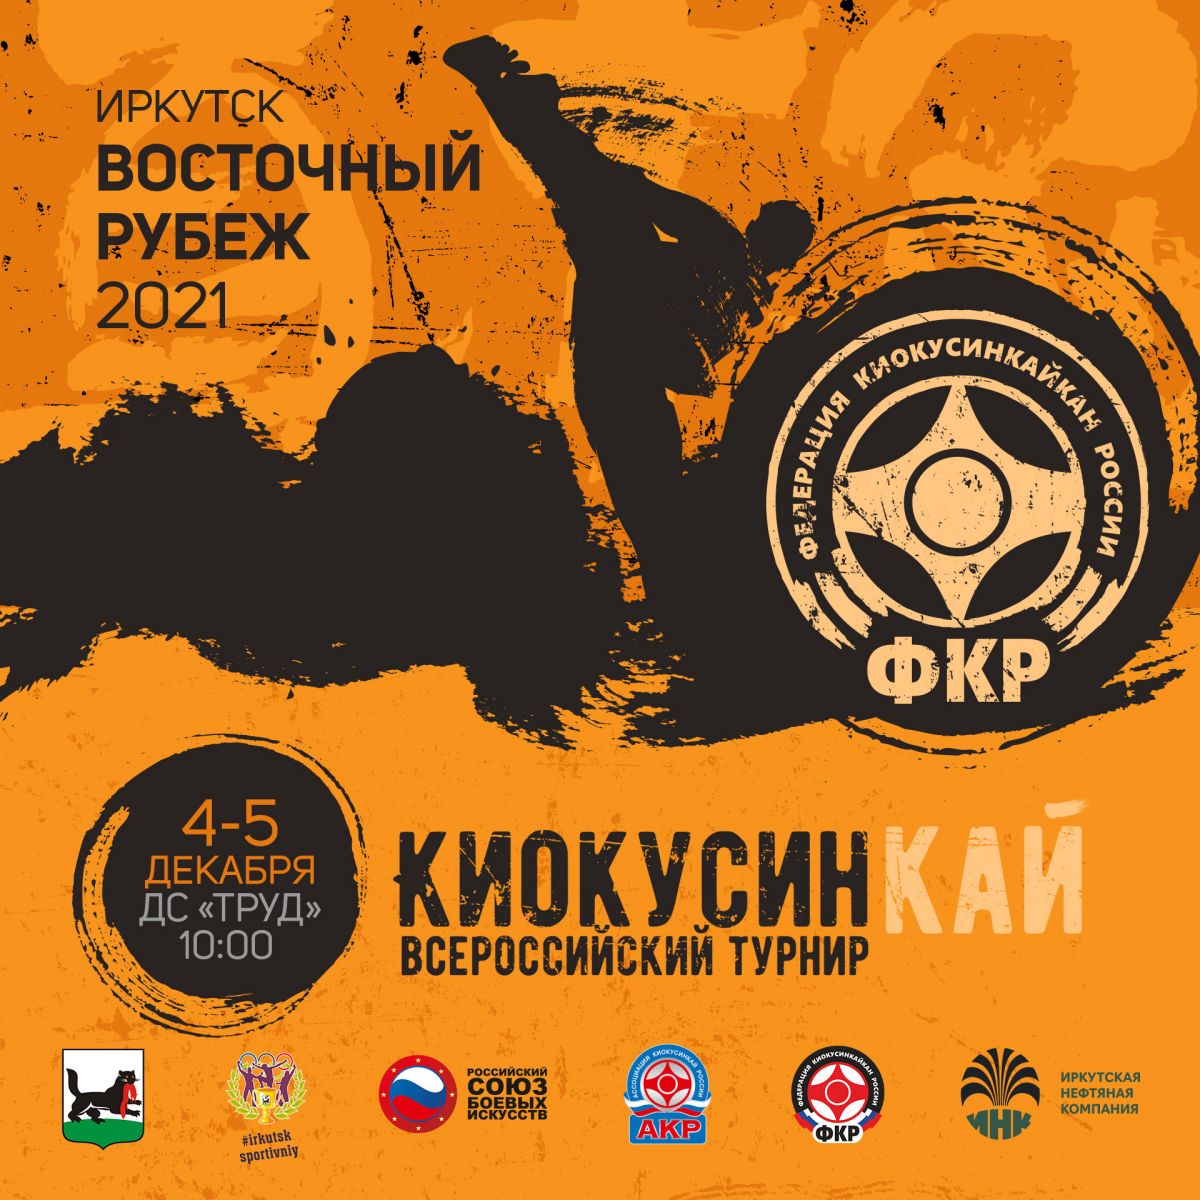 Всероссийский турнир "Восточный рубеж"